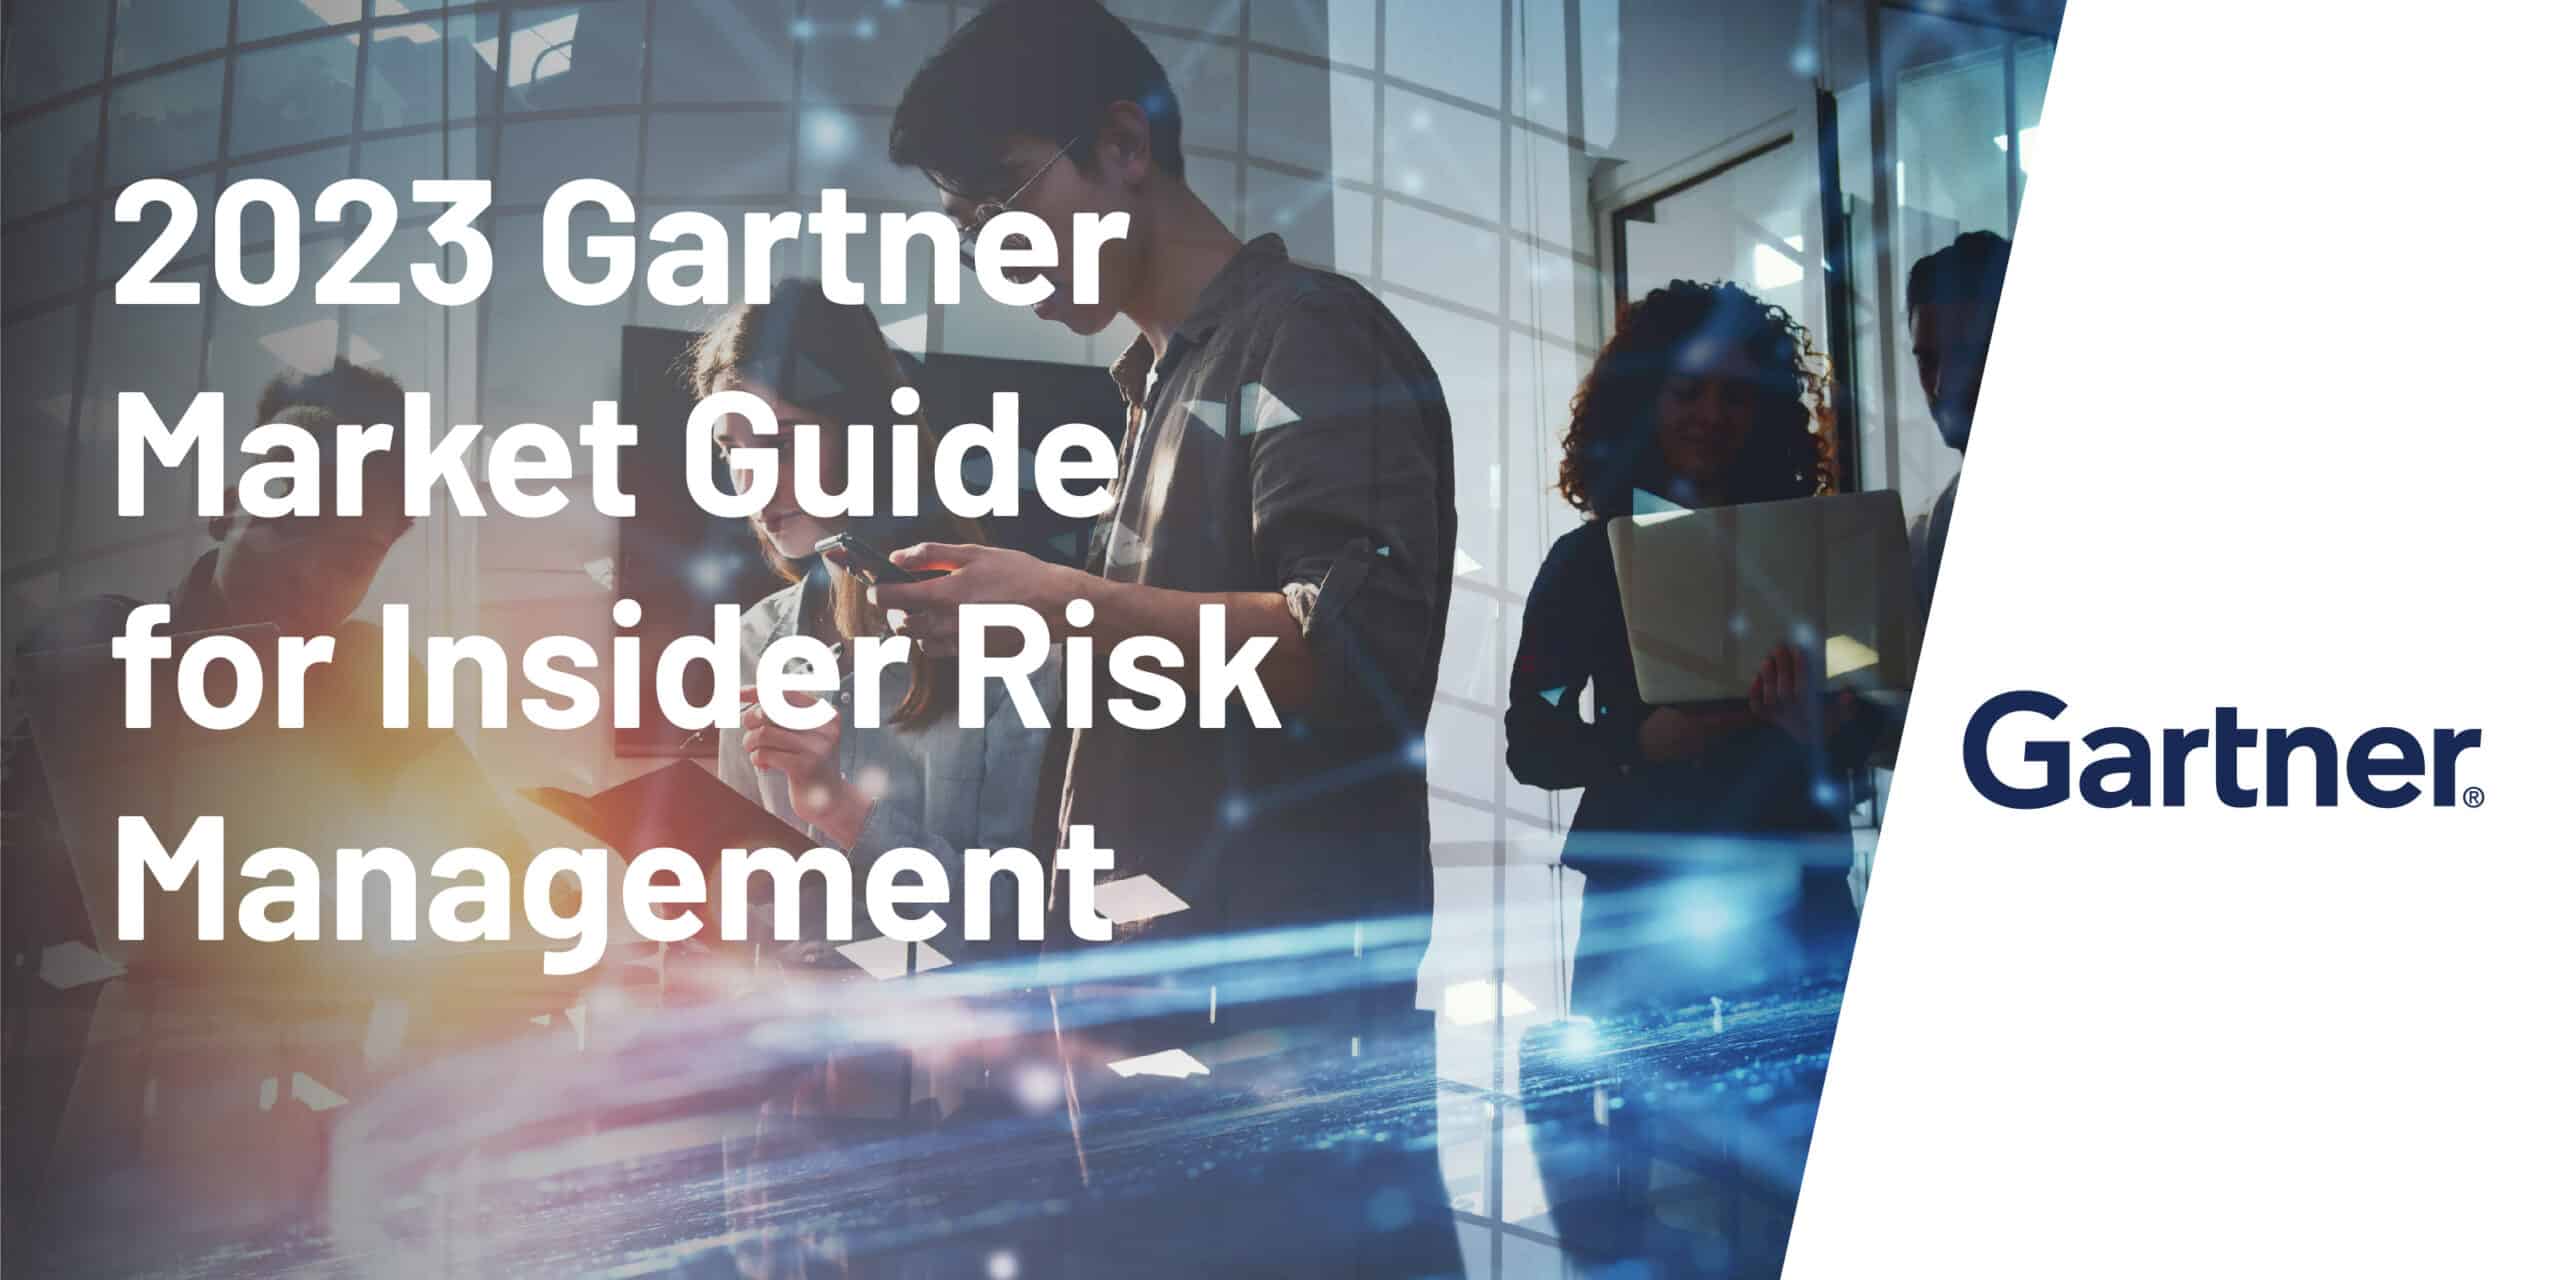 Gartner 2023 Market Guide for Insider Risk Management